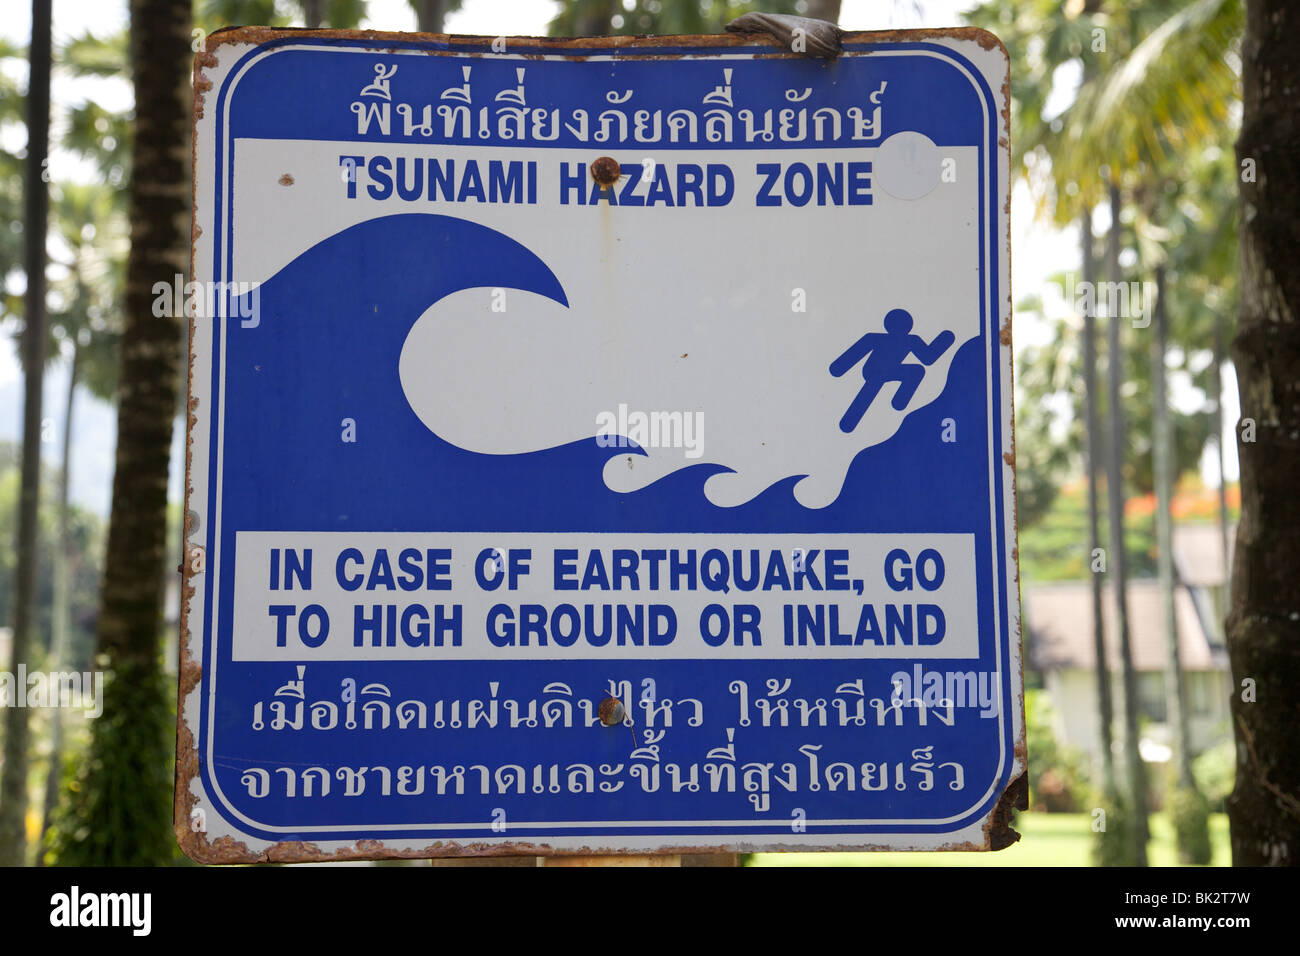 Tsunami warning sign on Phuket island, Thailand Stock Photo